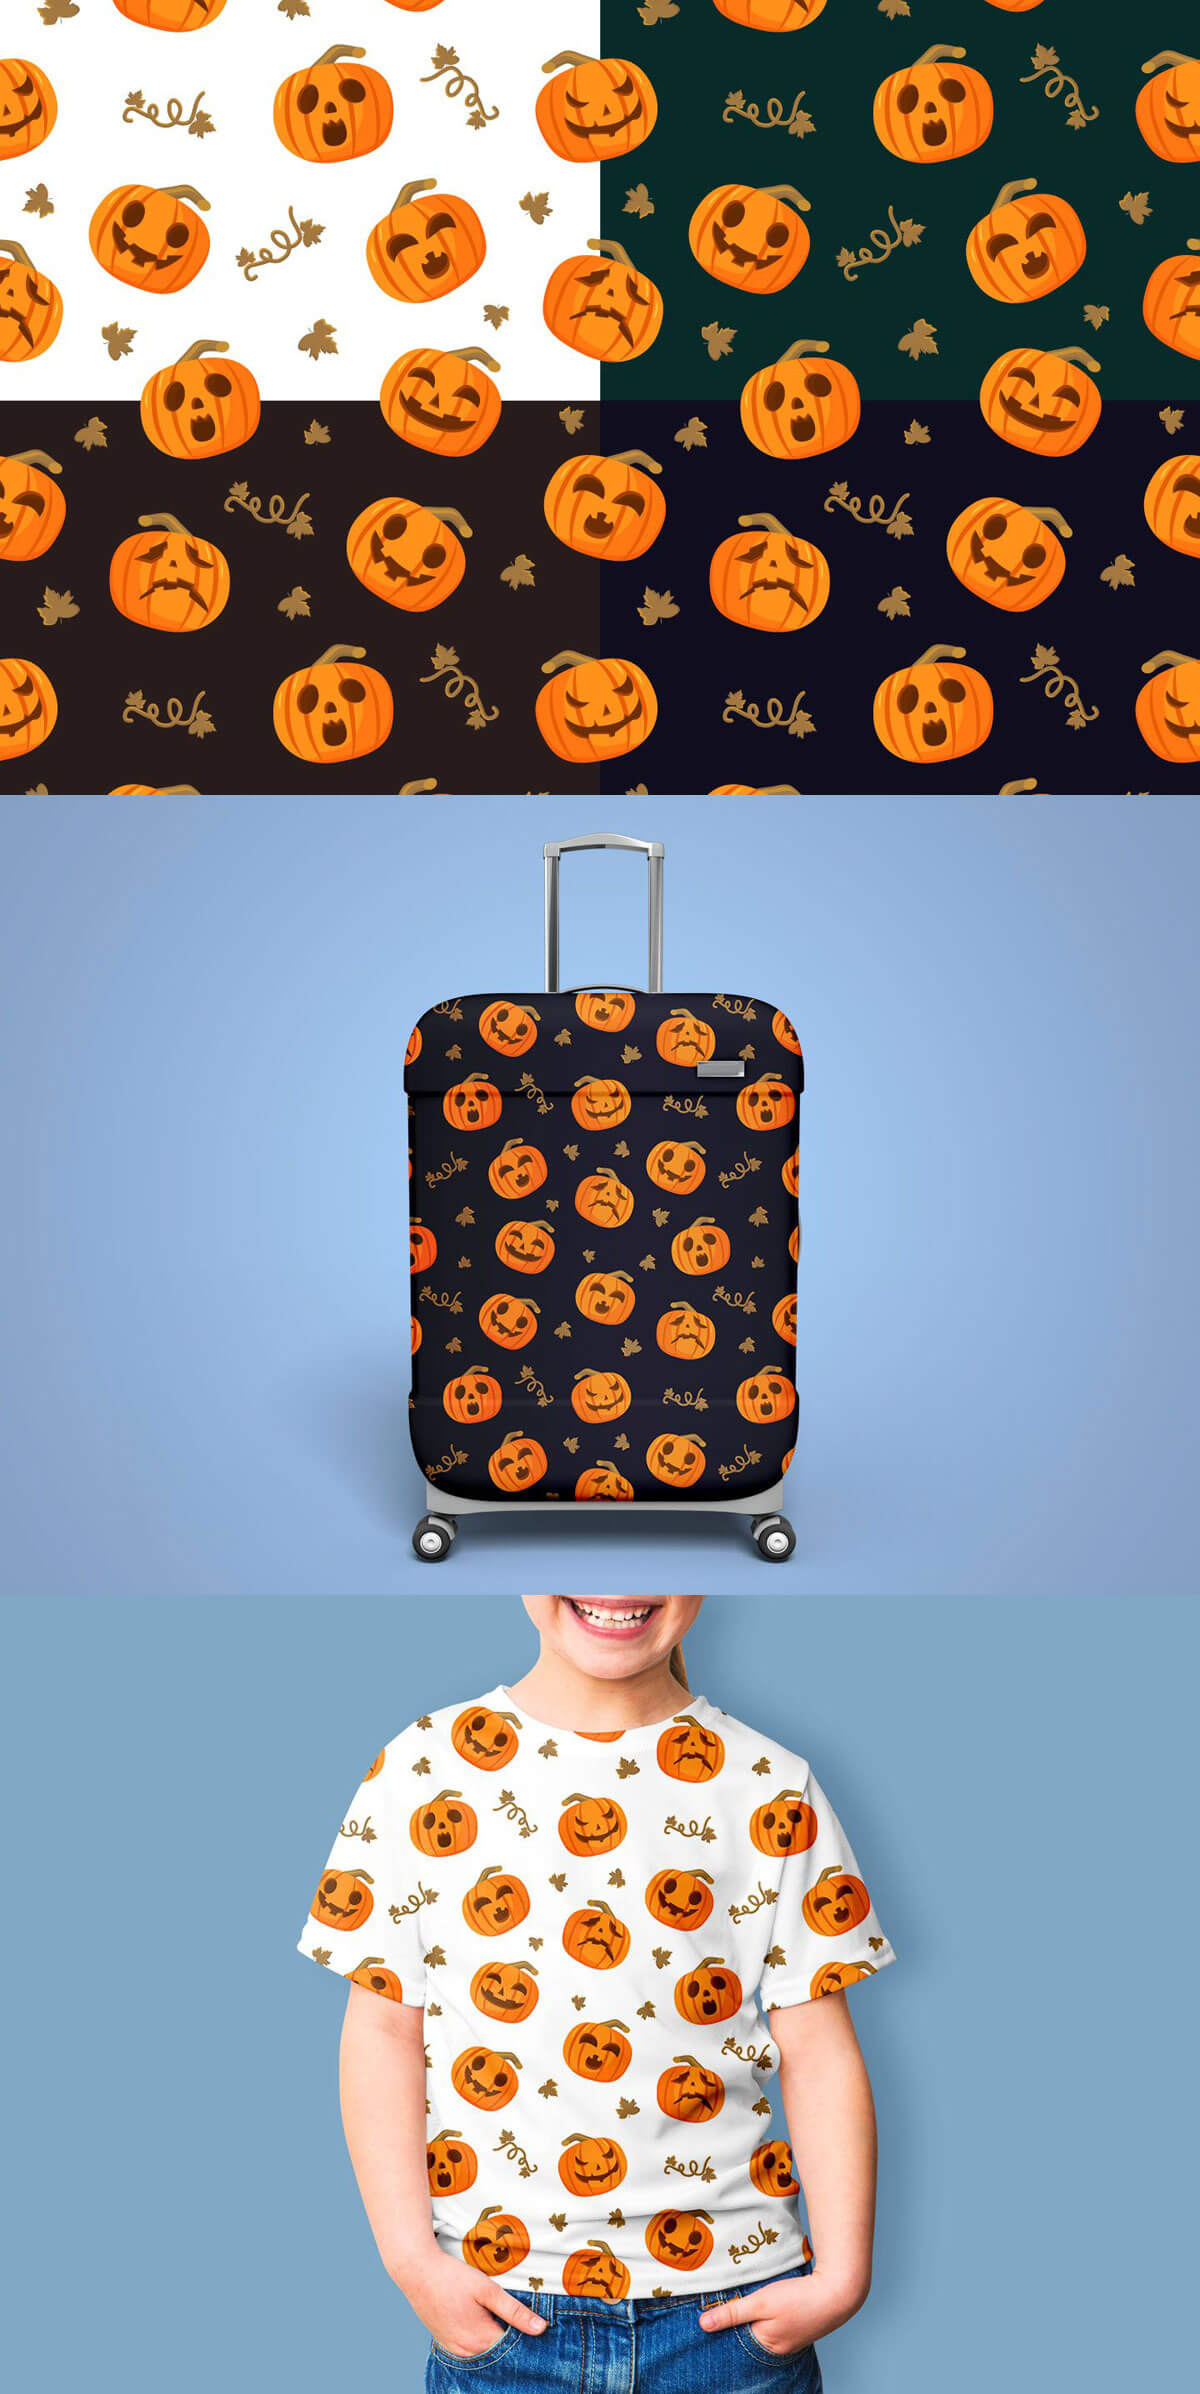 Free Halloween Pumpkins Vector Seamless Pattern